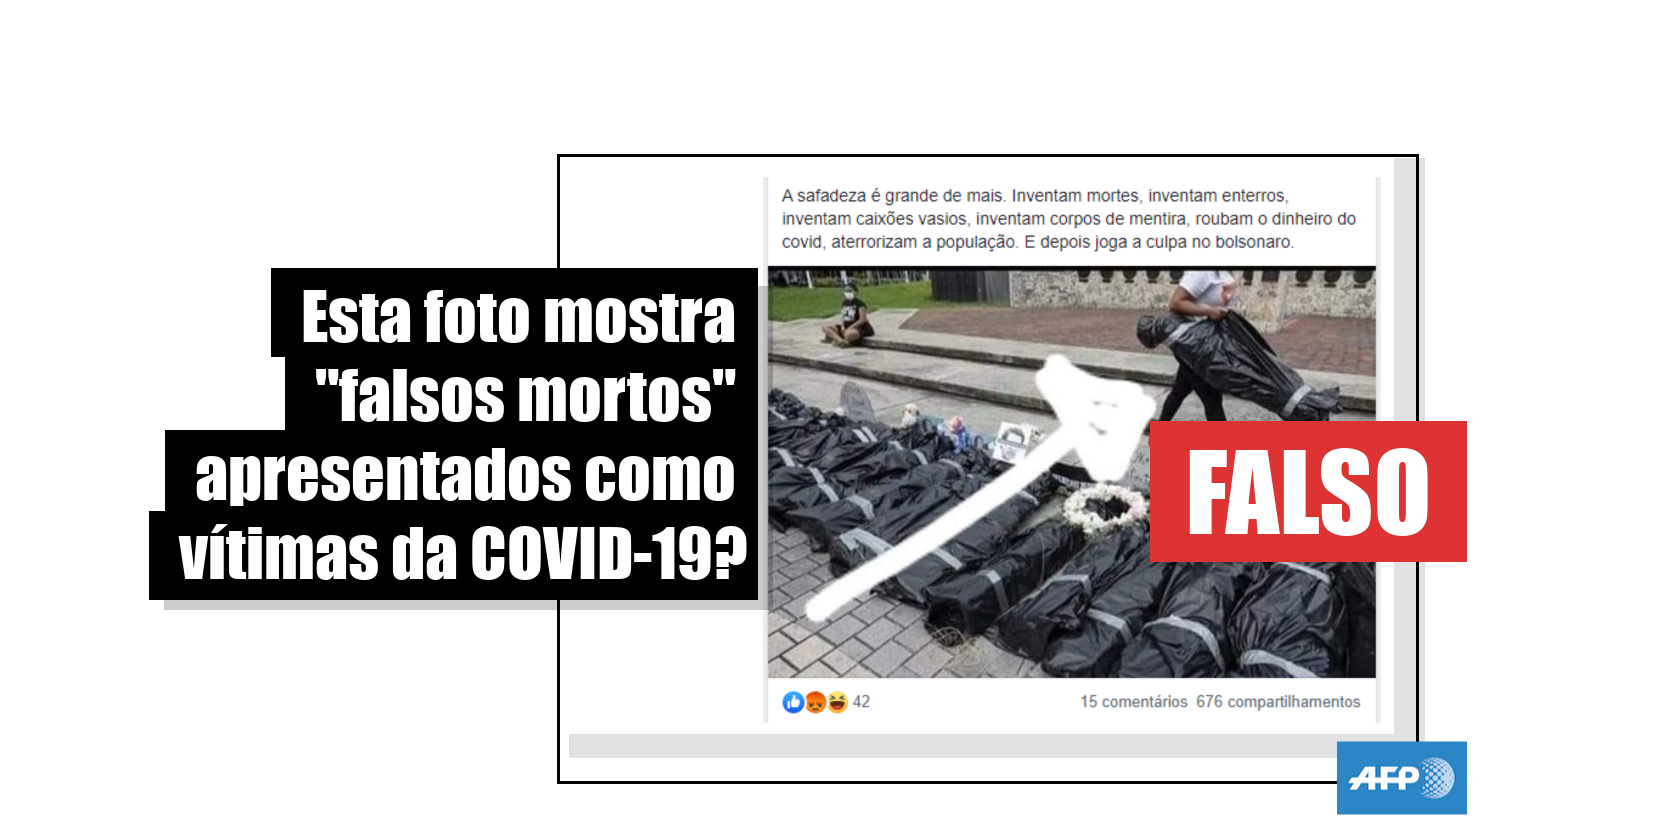 Vídeo de pessoas dentro de sacos plásticos foi feito em protesto na  Colômbia, não no Afeganistão - Internacional - Estado de Minas